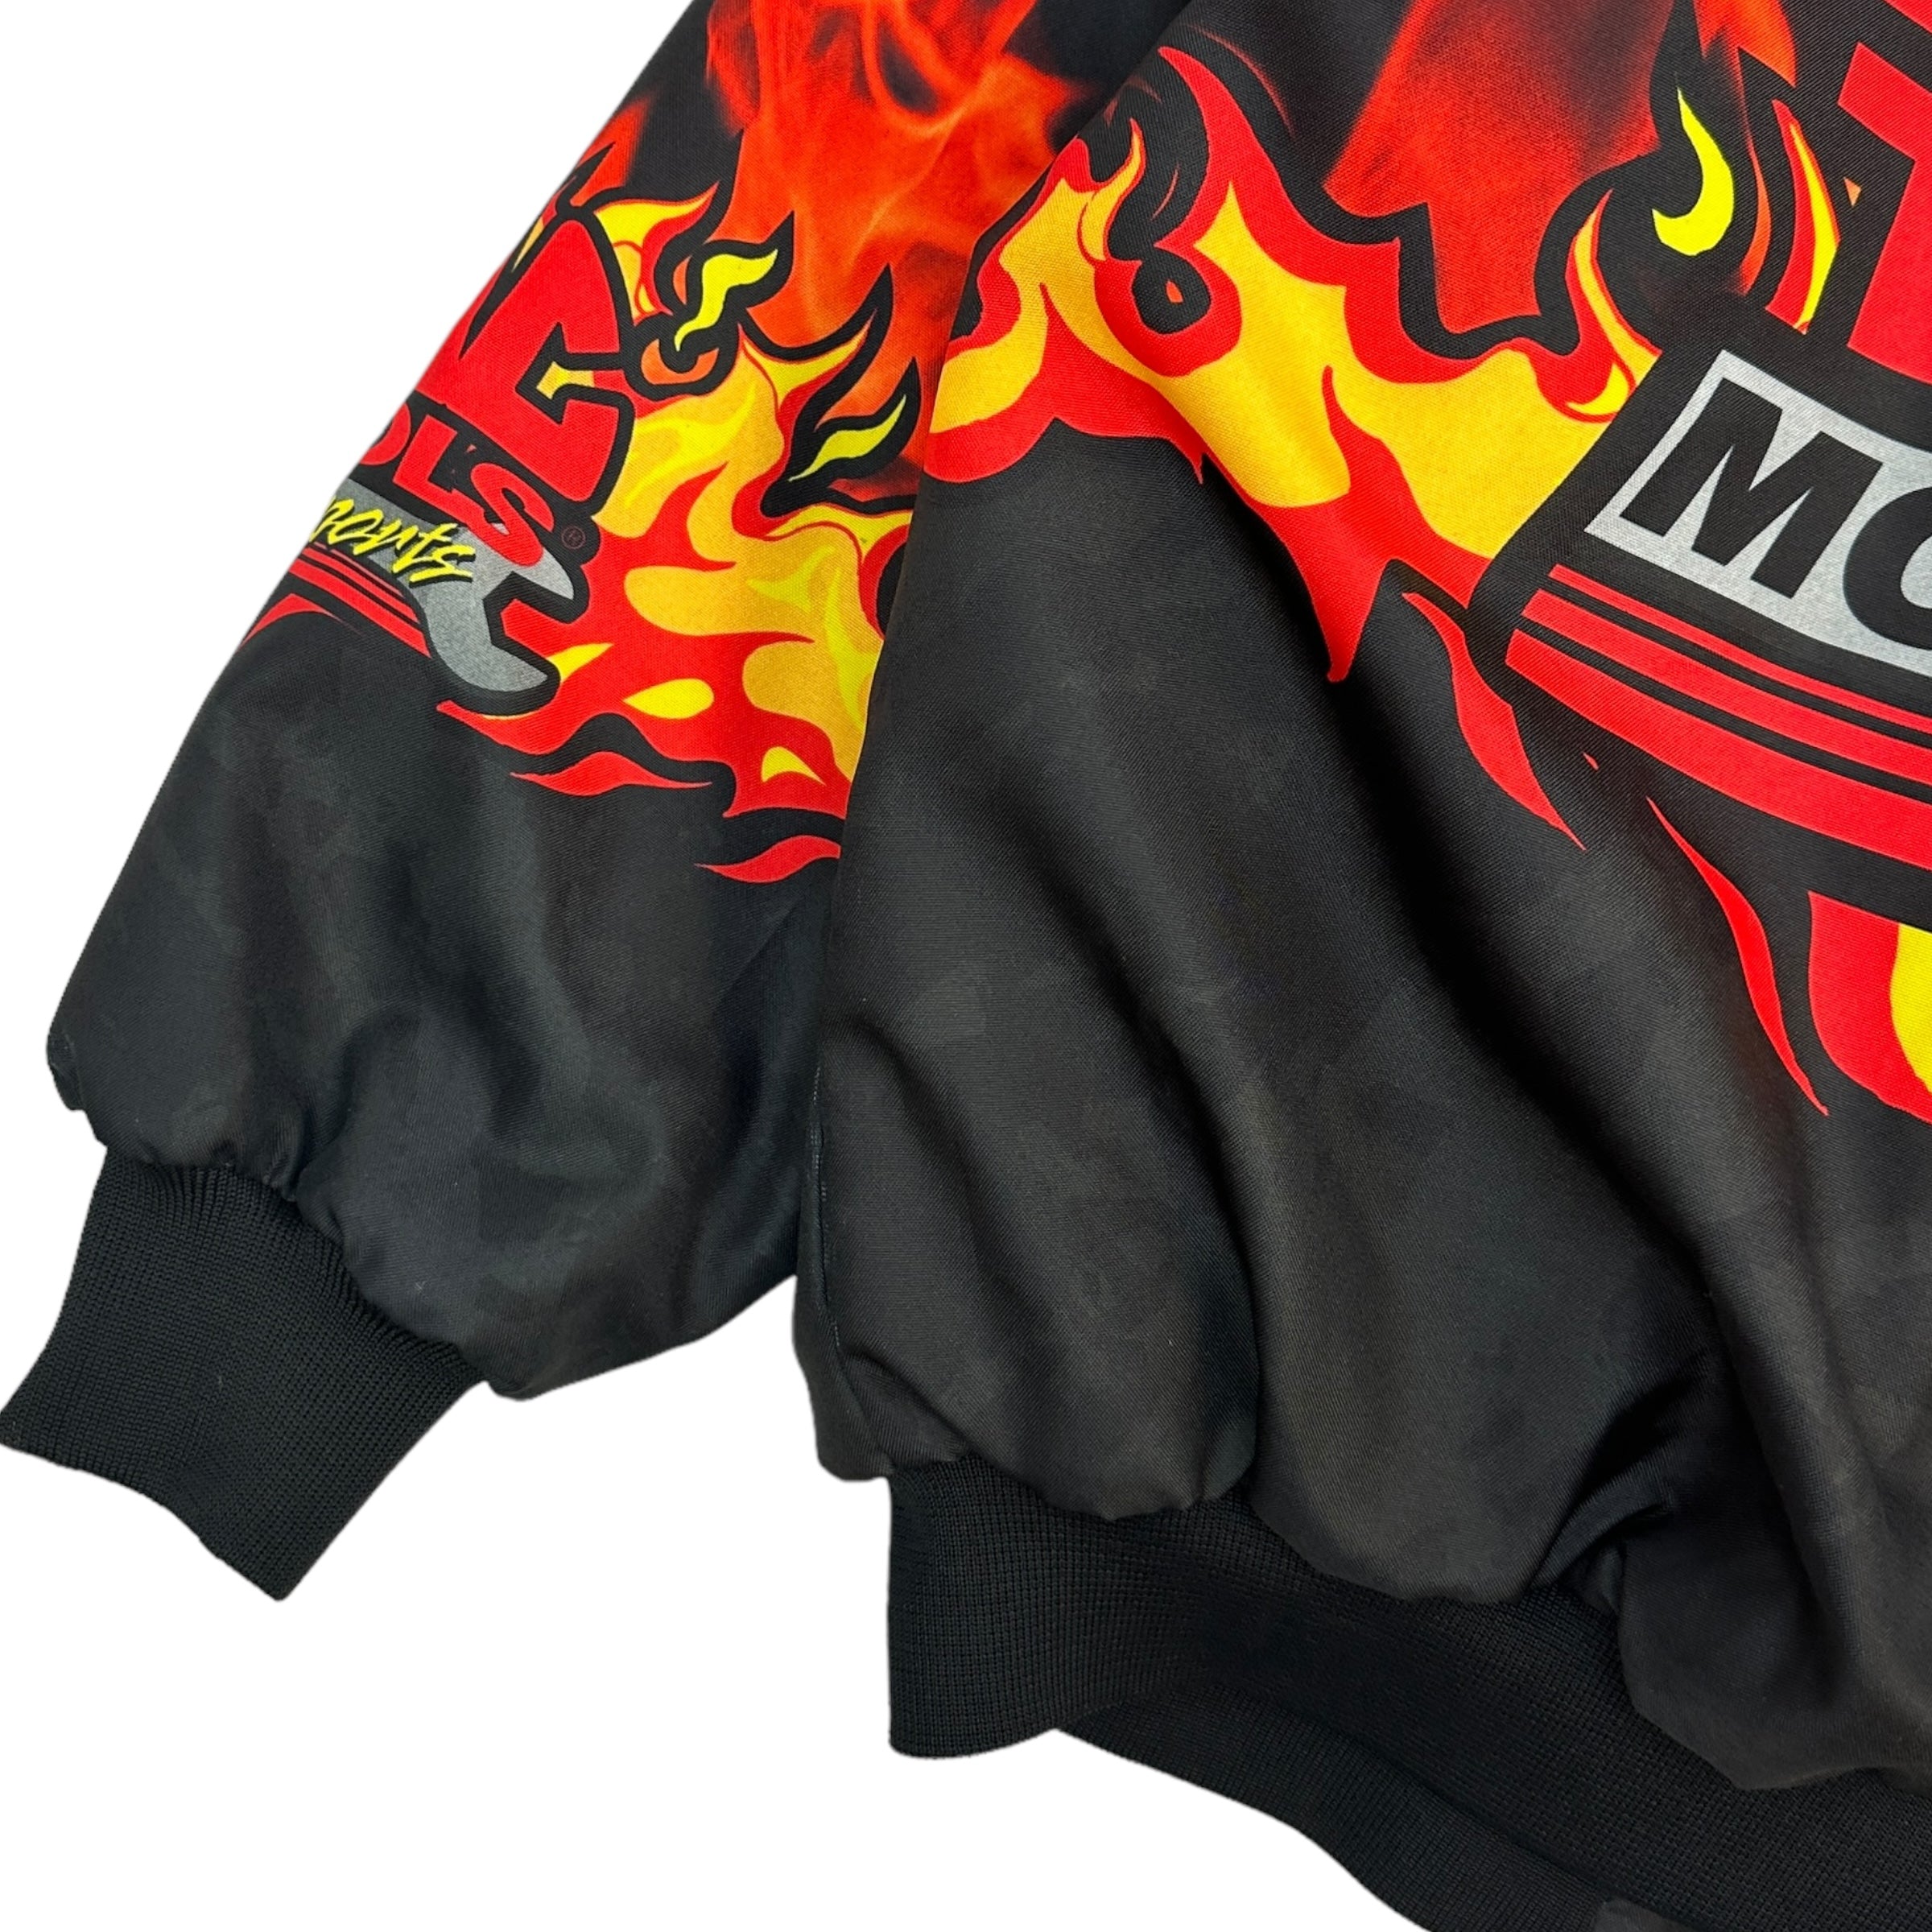 Vintage Mac Tools Flames Puffer Jacket